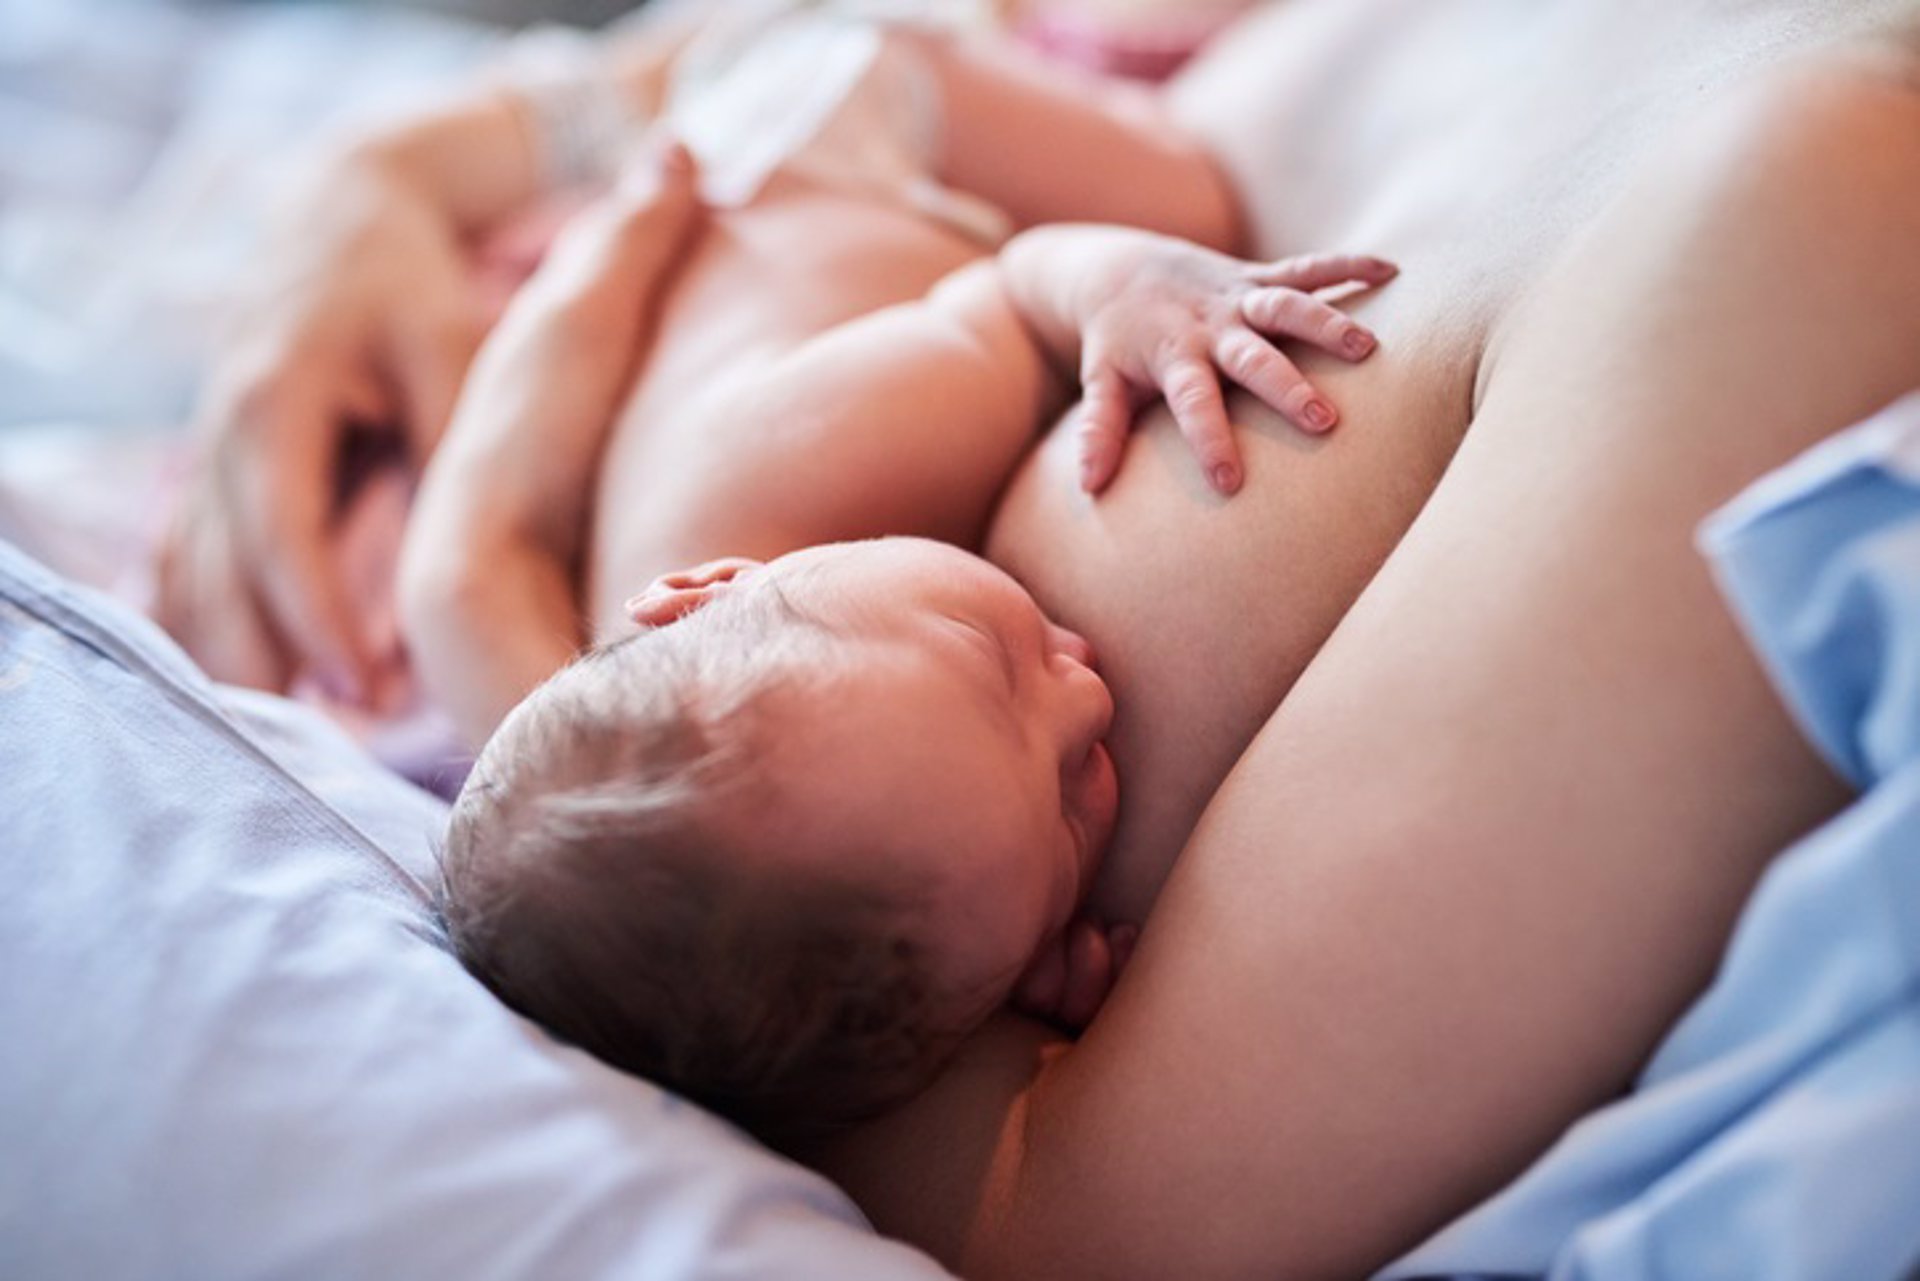 Guía definitiva de la lactancia materna – Artículos Maternales